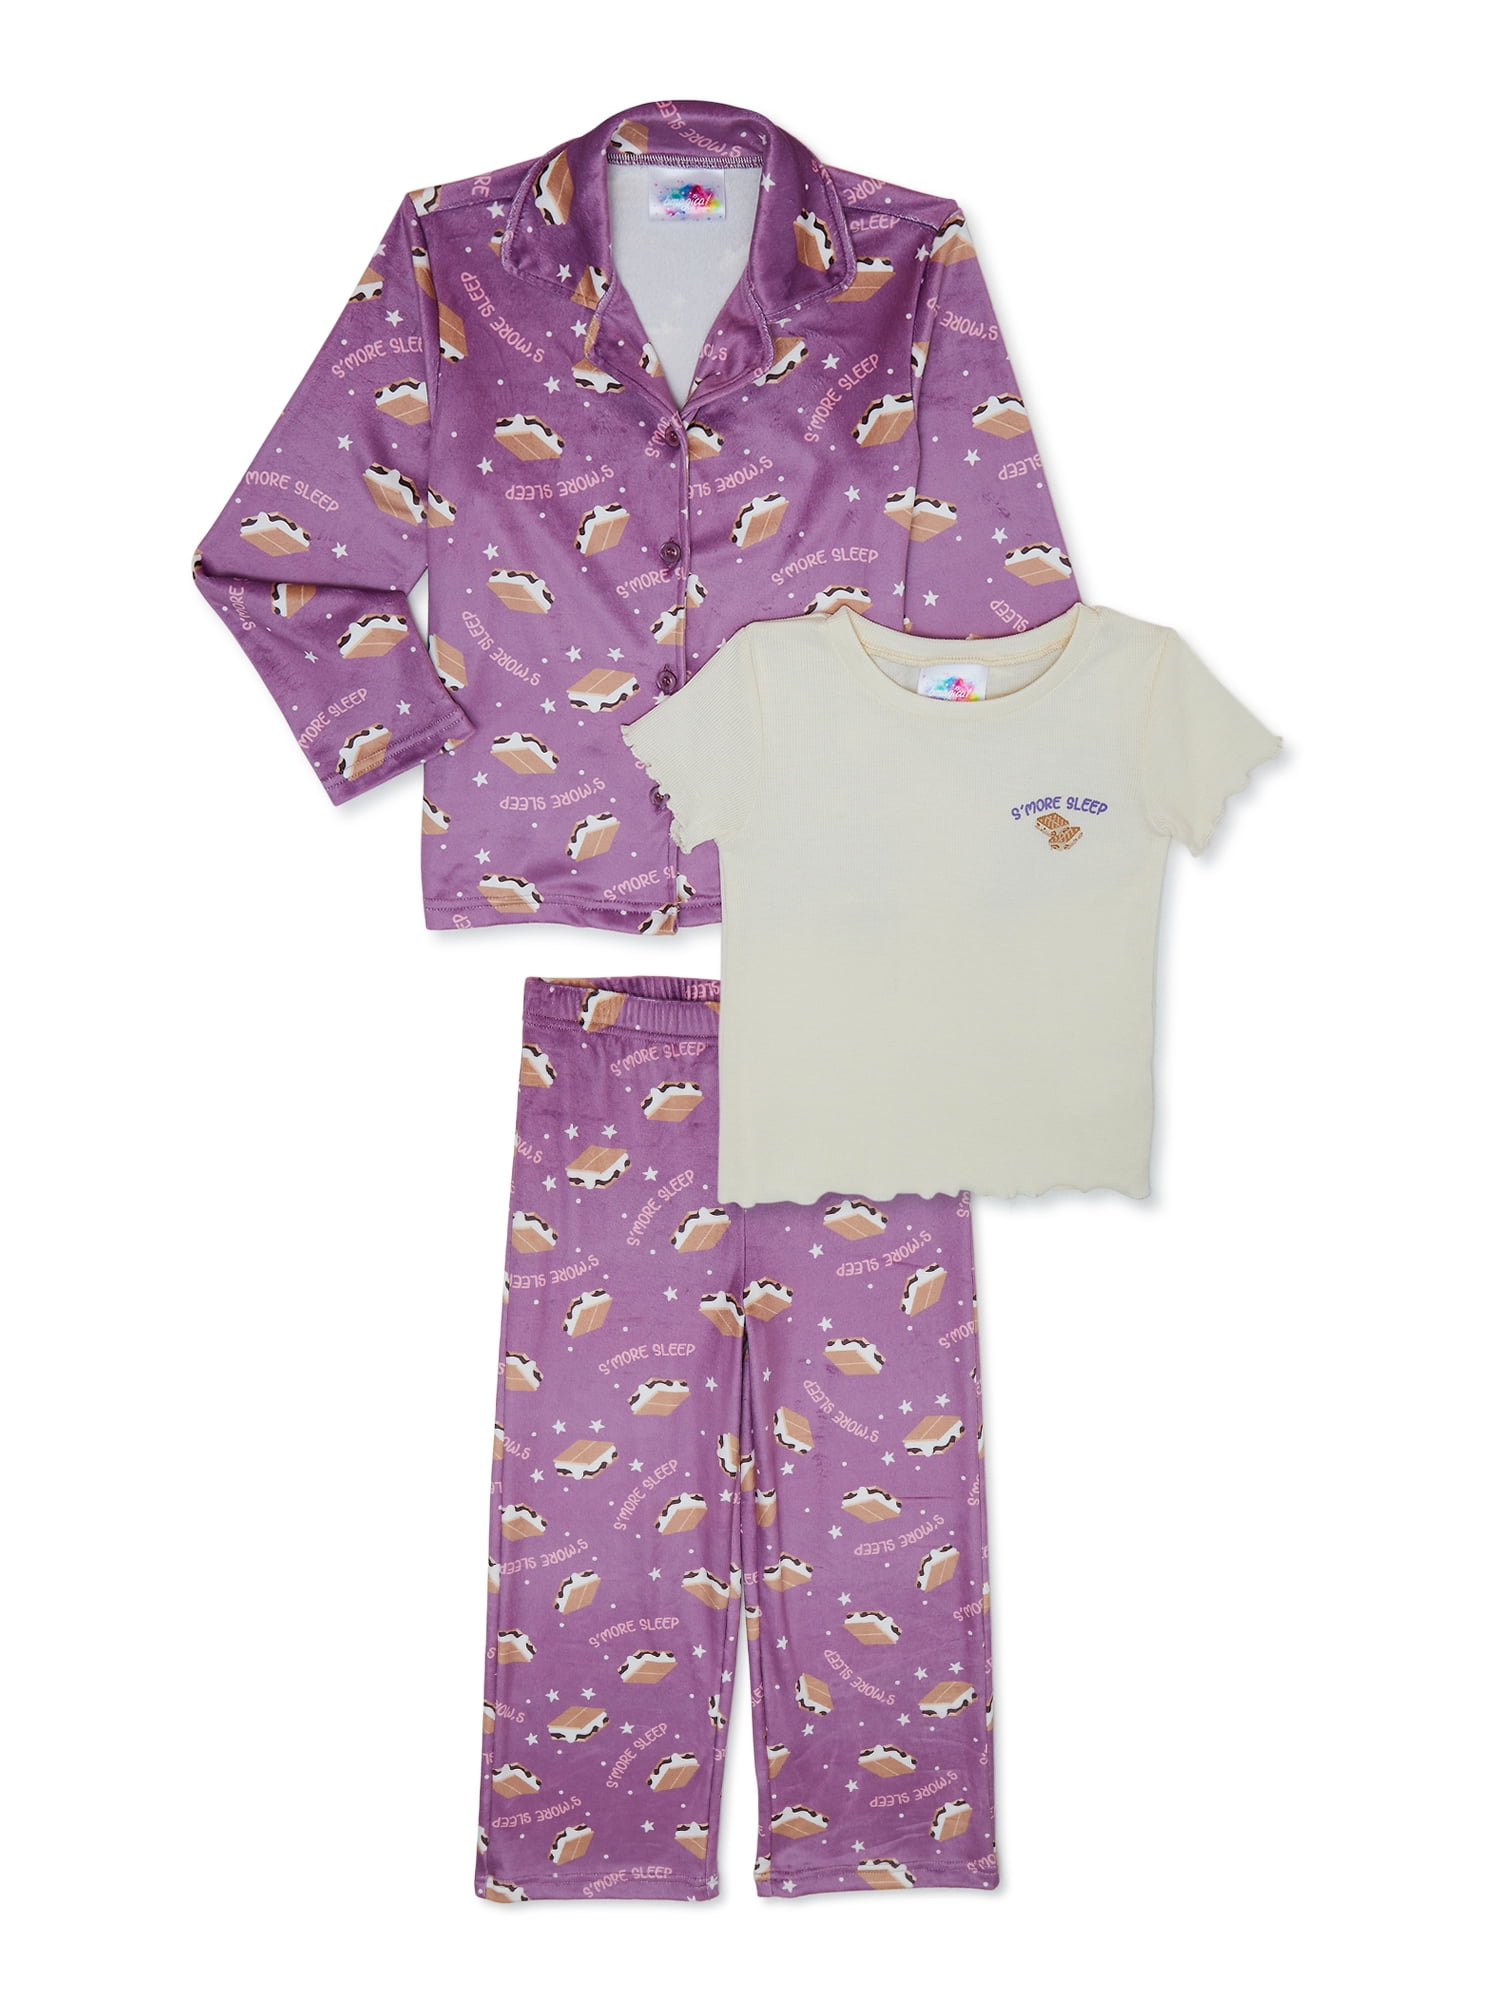 Bmagical Girls Long Sleeve Notch Collar Top, Short Sleeve Top and Pant  3-Piece Pajama Set, Sizes 4-12